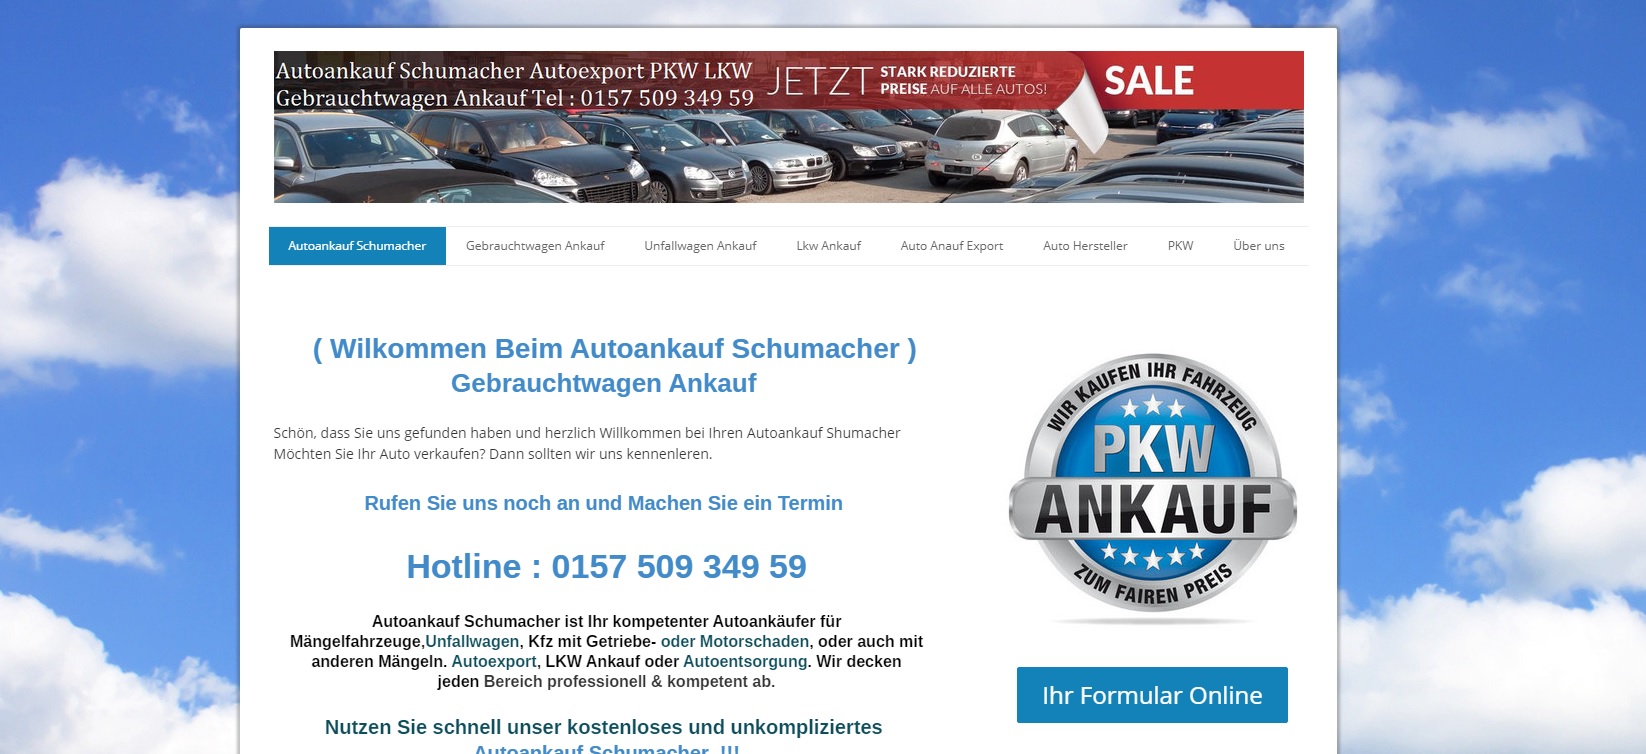 top kontitionen bei autoankauf bremerhaven fuer ihr gebrauchtwagen - Top Kontitionen bei Autoankauf-Bremerhaven für ihr Gebrauchtwagen